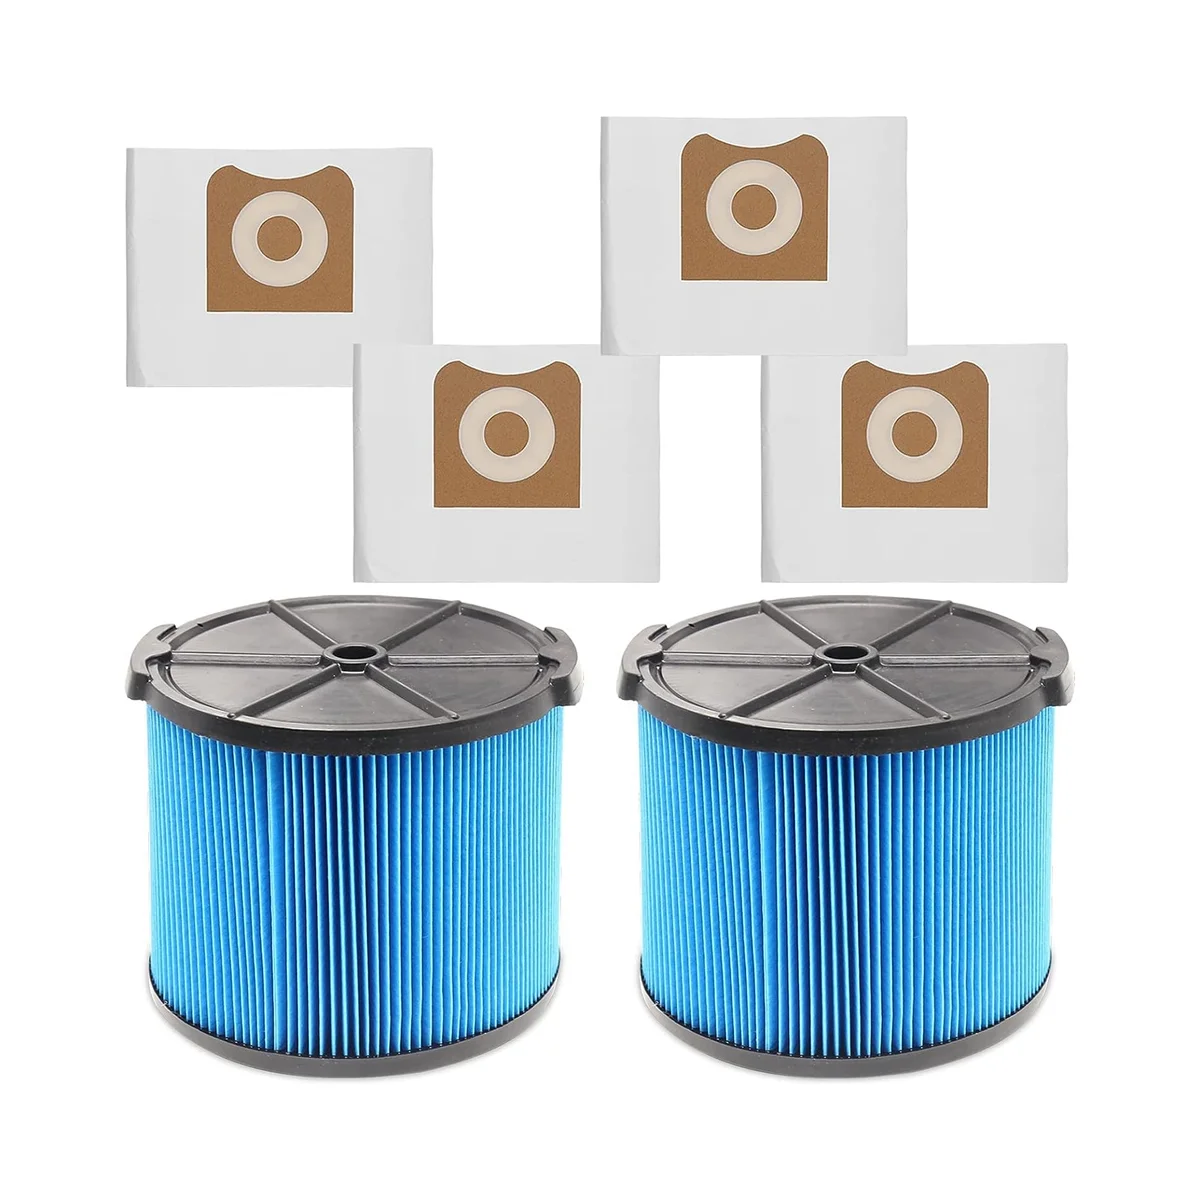 

2 шт., сменные фильтры VF3500 для портативного пылесоса Ridgid, 3-4,5 галлонов, влажные и сухие пылесосы + 4 шт. в упаковке, VF3501, мешки для фильтров